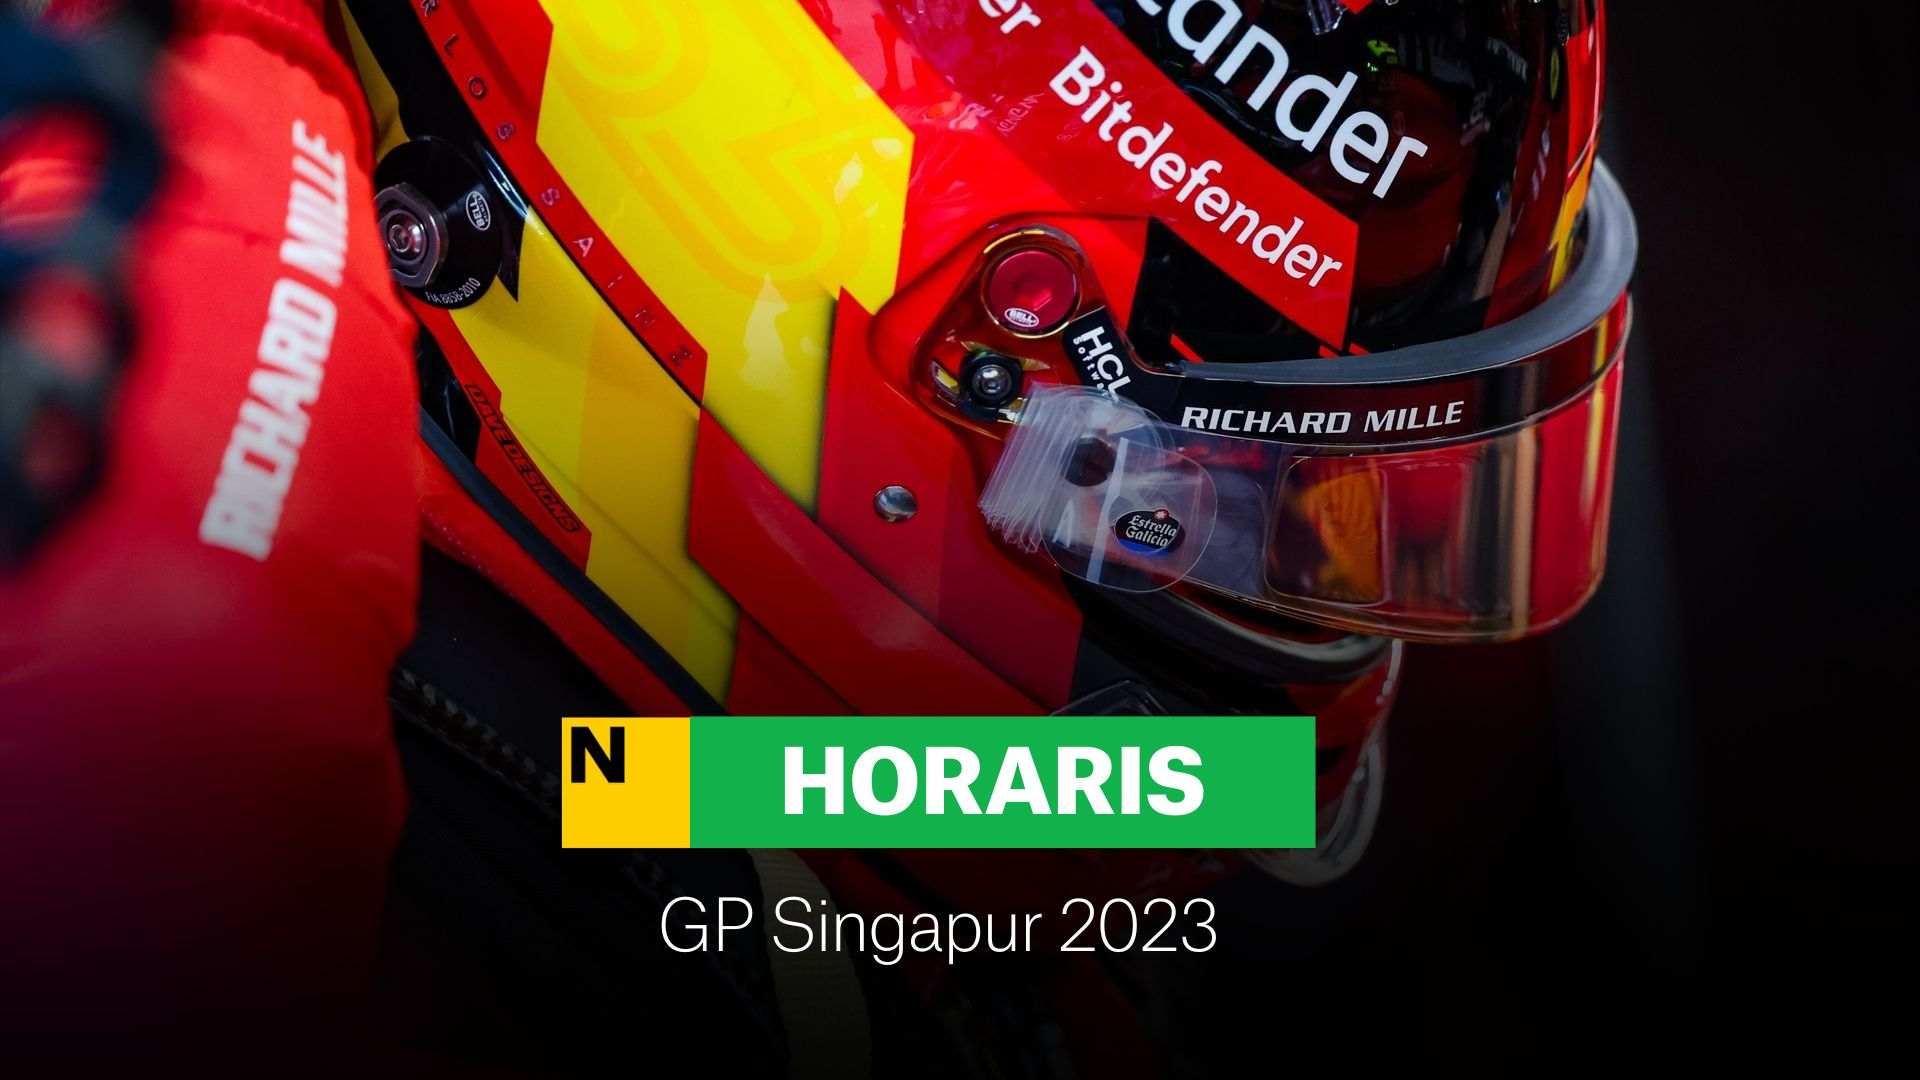 F1 GP Singapur: Horario y dónde ver la carrera de la Fórmula 1 2023 con Alonso y Sainz